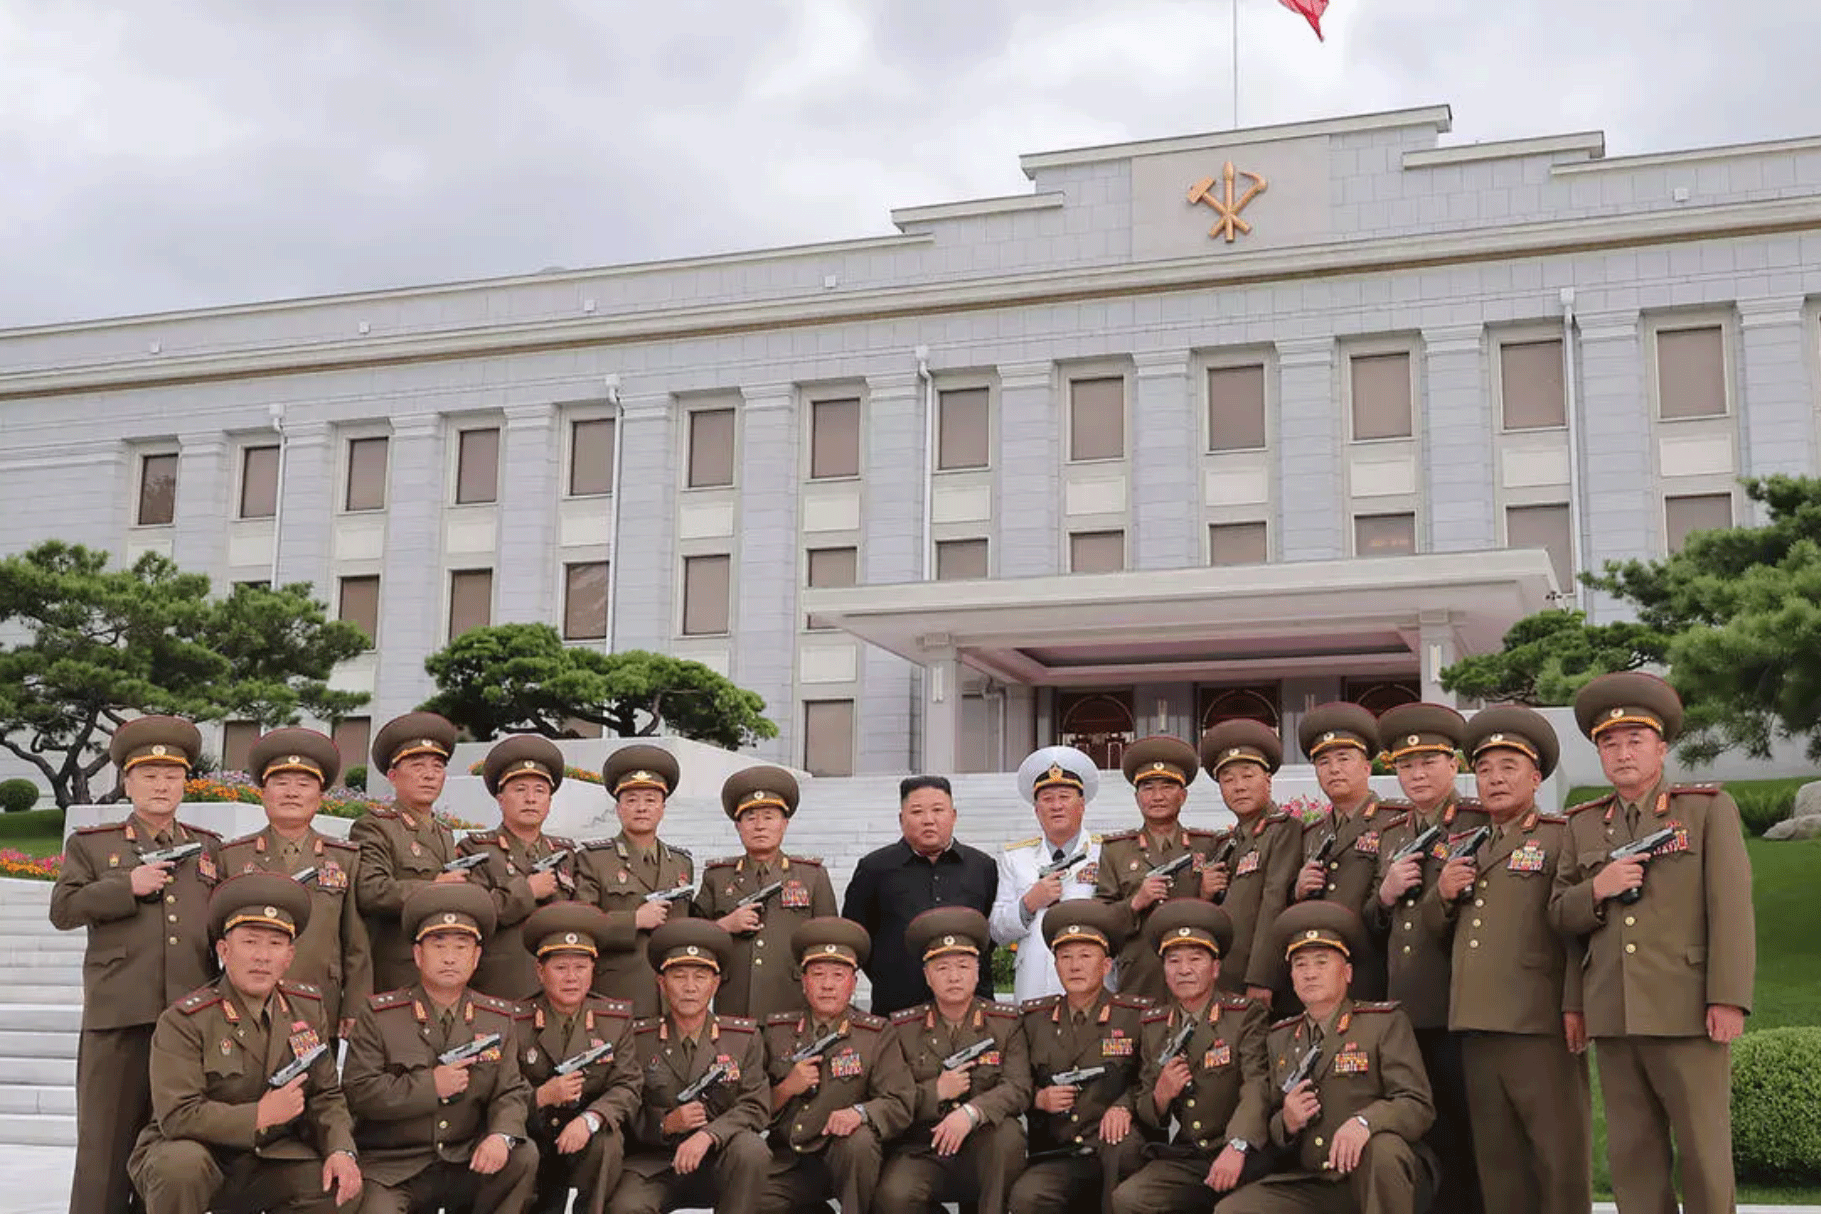 صورة التقطت في 26 يوليو 2020 تظهر الكوري الشمالي كيم جونغ أون وحوله جنرالات من جيشه خلال الاحتفال بالذكرى الـ67 لوقف إطلاق النار في شبه الجزيرة الكورية